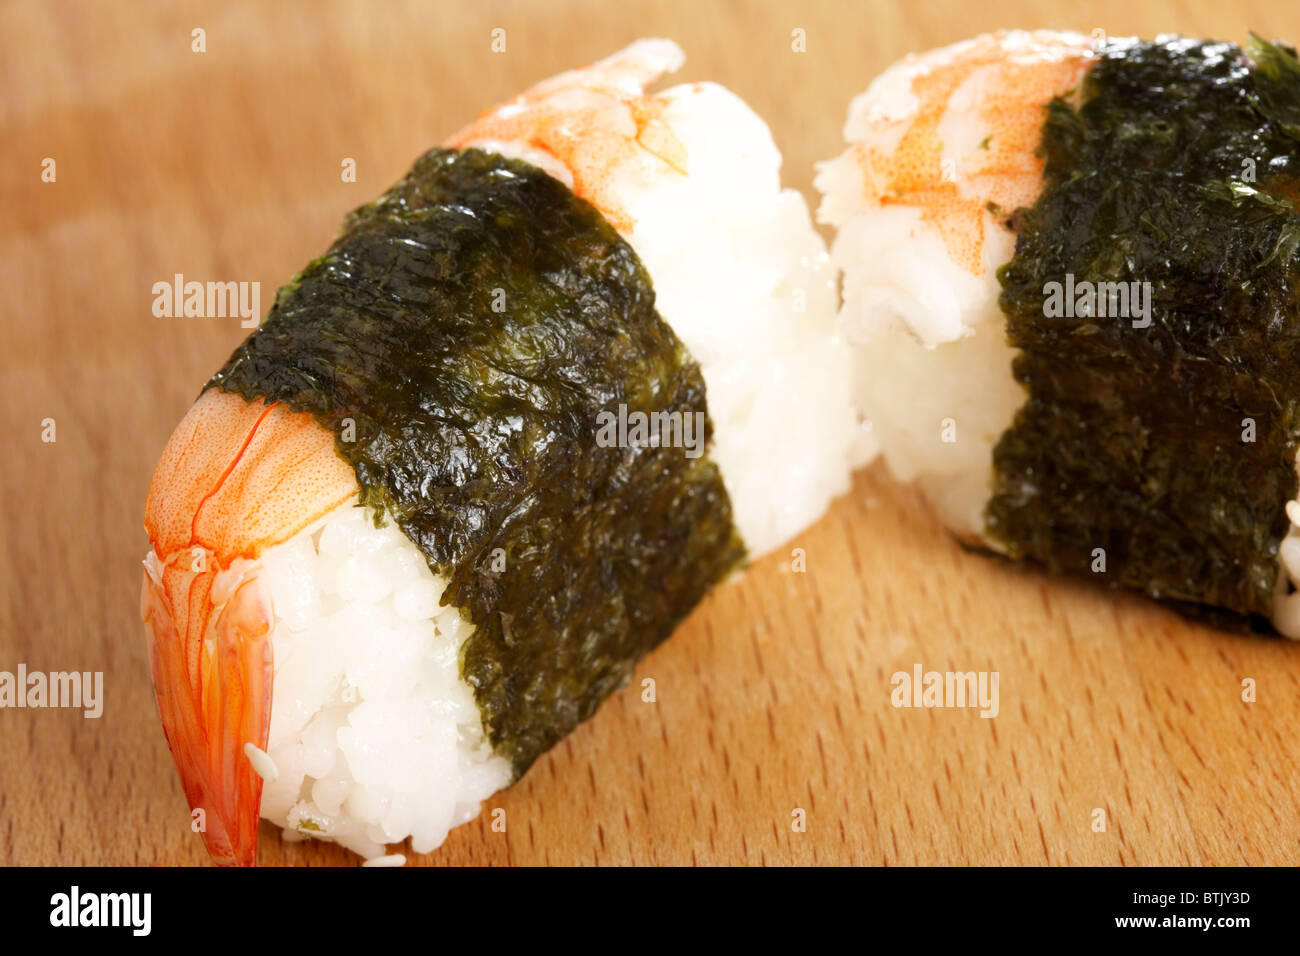 ebi prawn nigiri sushi wrapped in nori seaweed Stock Photo